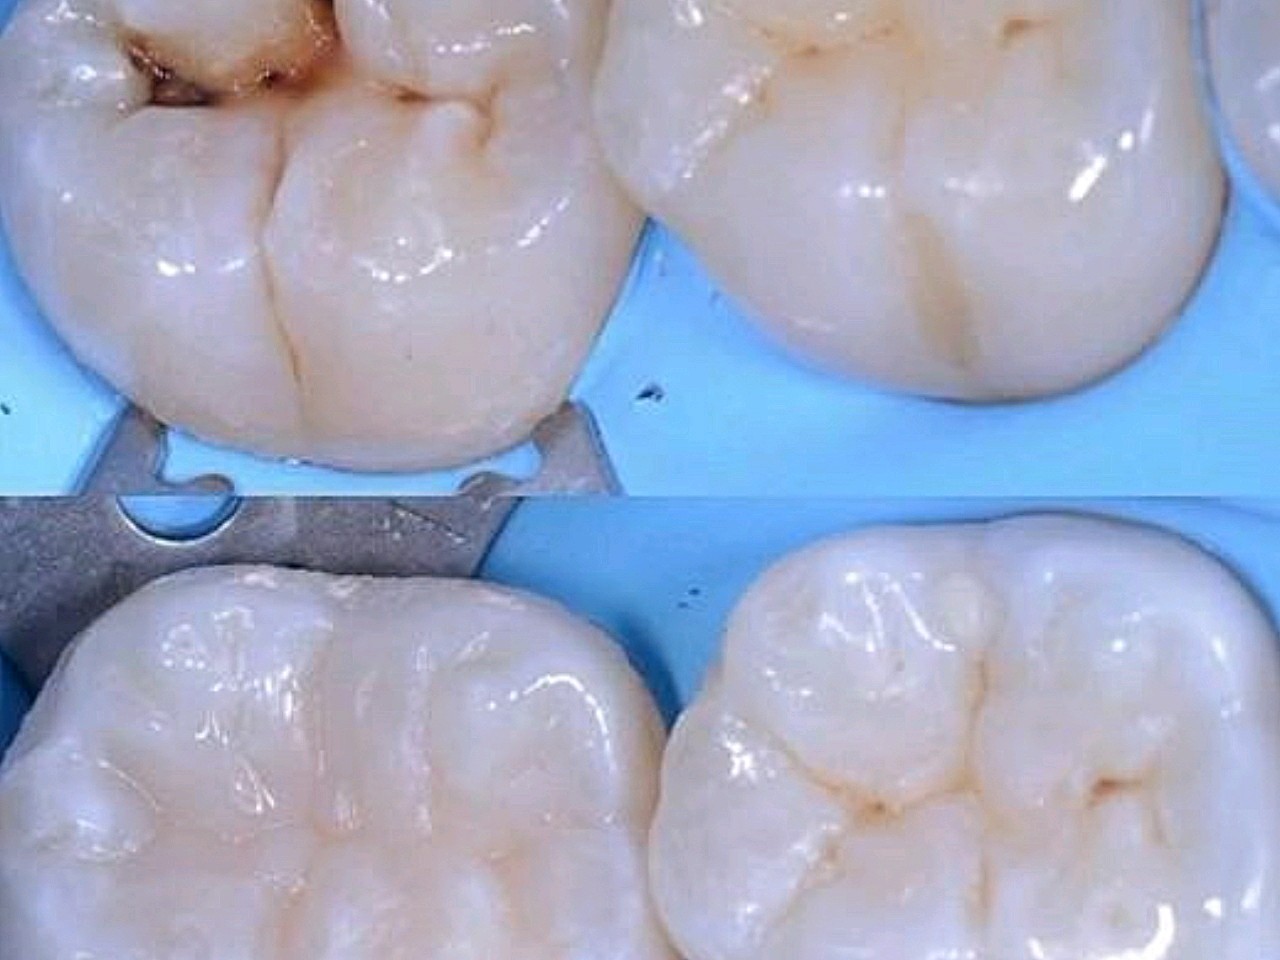 补牙,医学上称为"充填"是牙齿治疗的一个步骤.